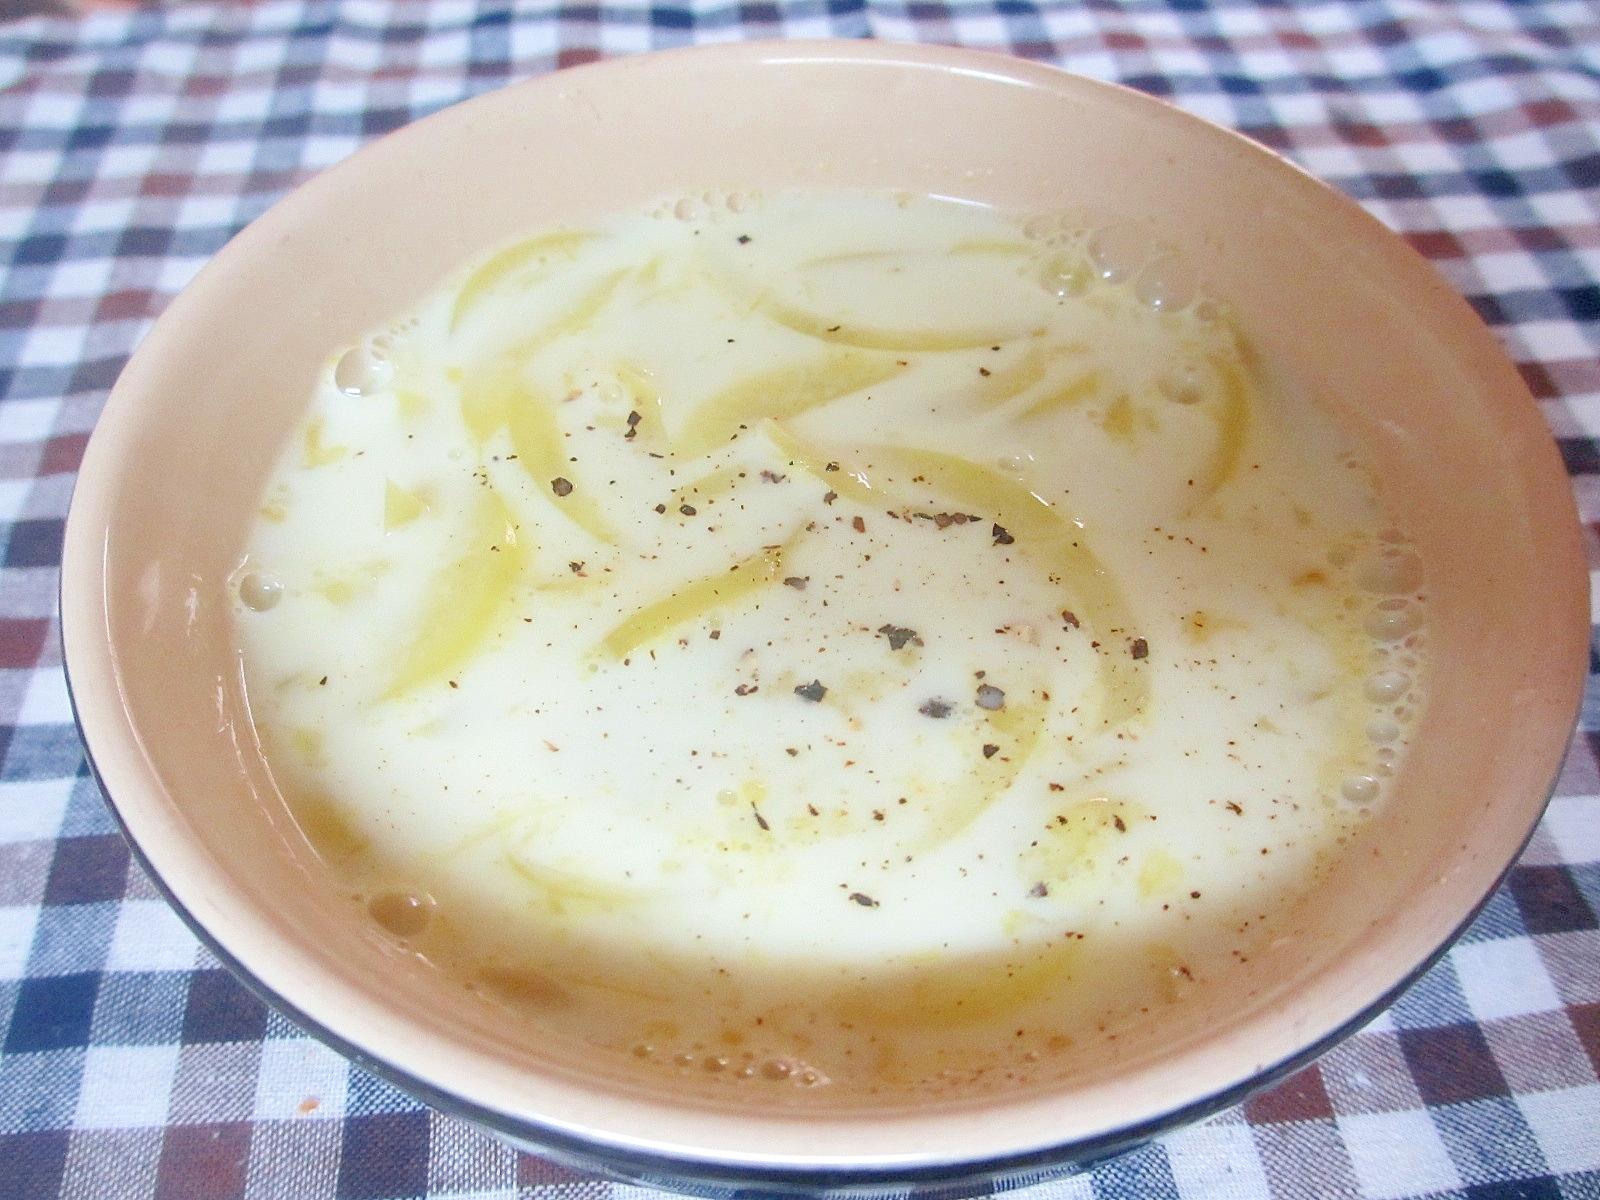 里芋のココナッツカレースープ